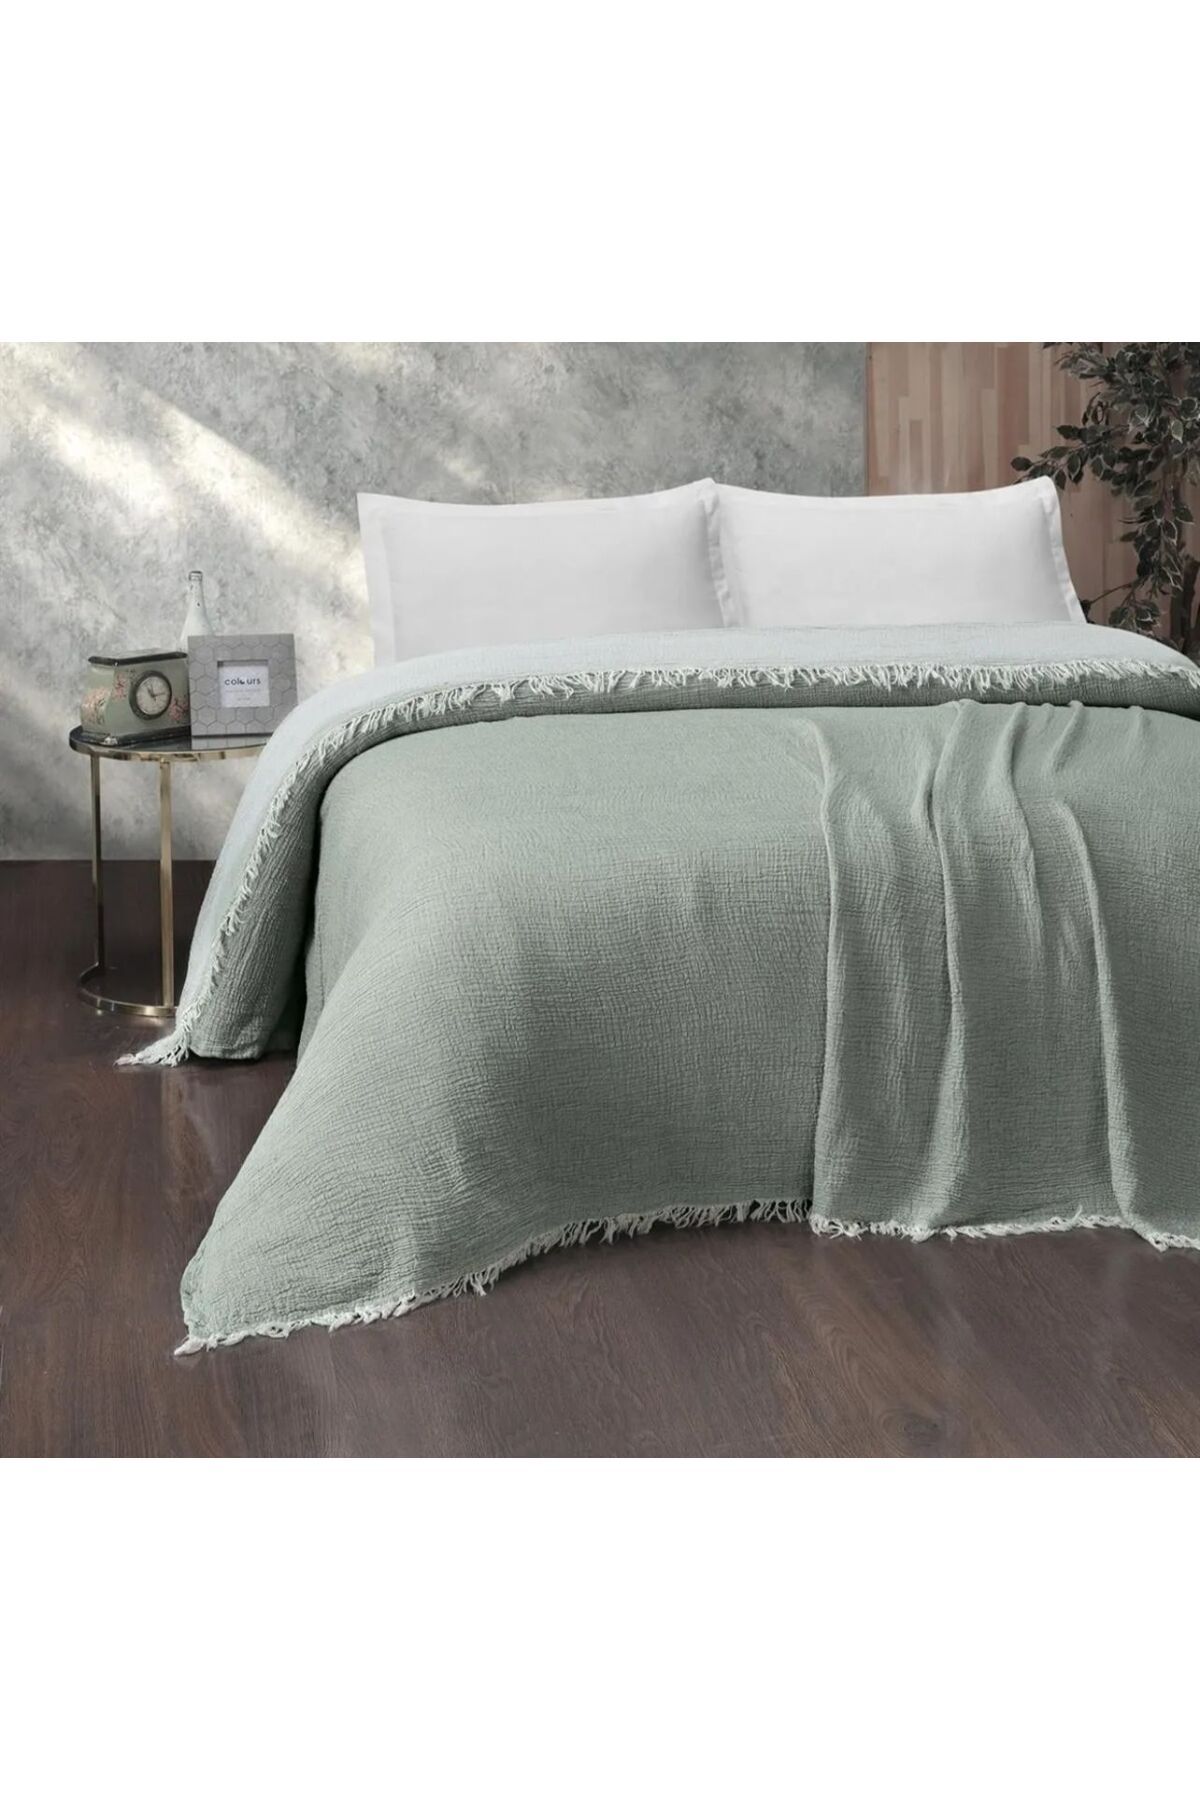 Natural fialka müslin çift kişilik organik yatak örtüsü